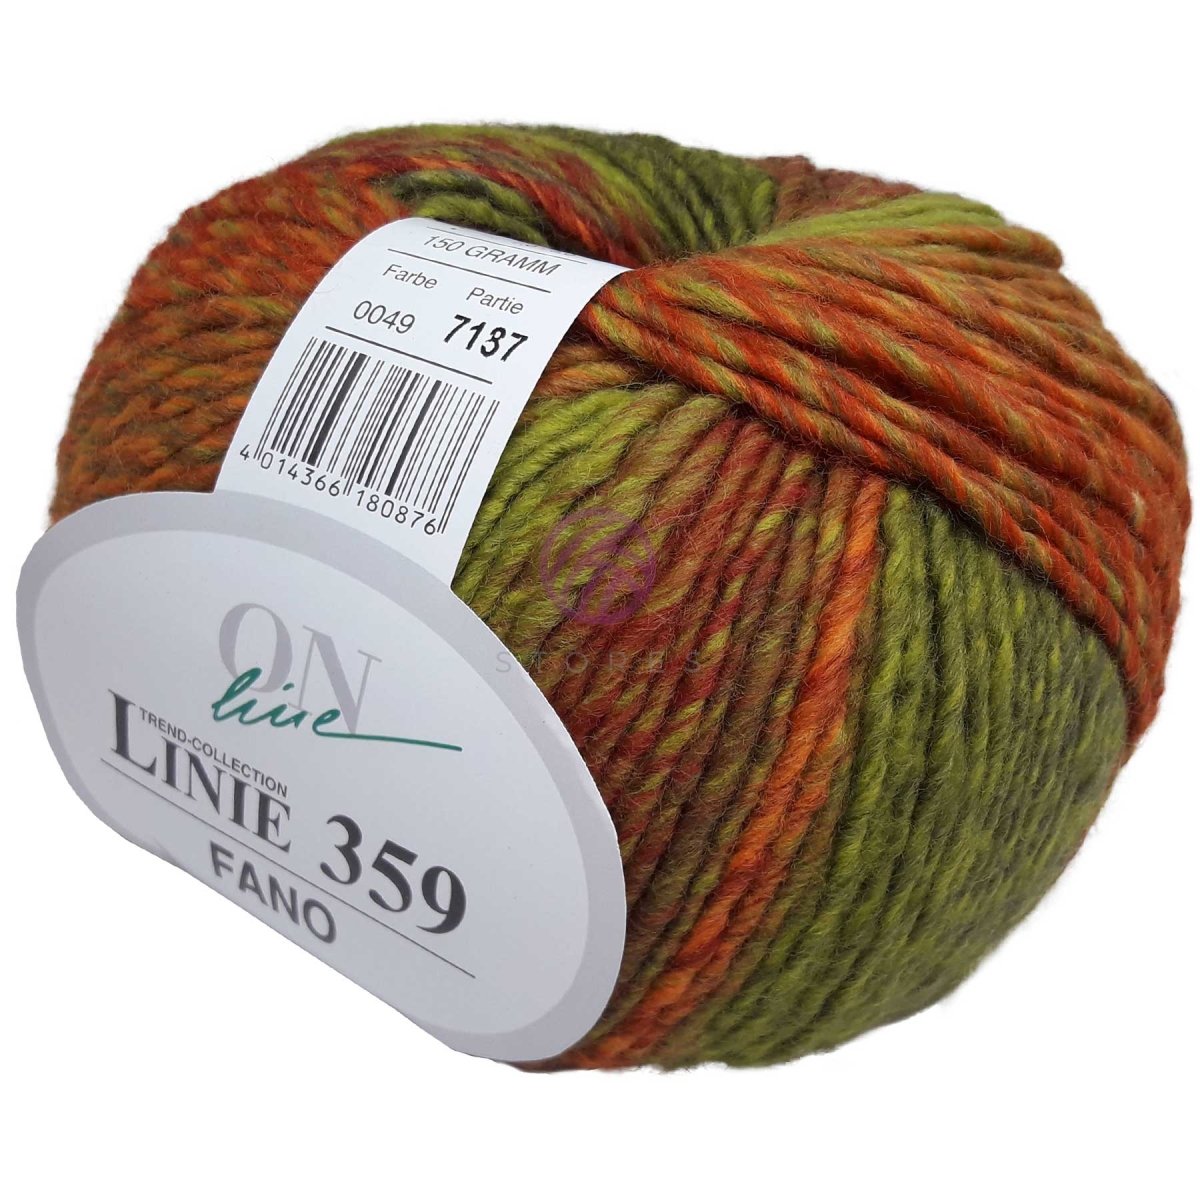 FANO - Crochetstores110359-0494014366180876